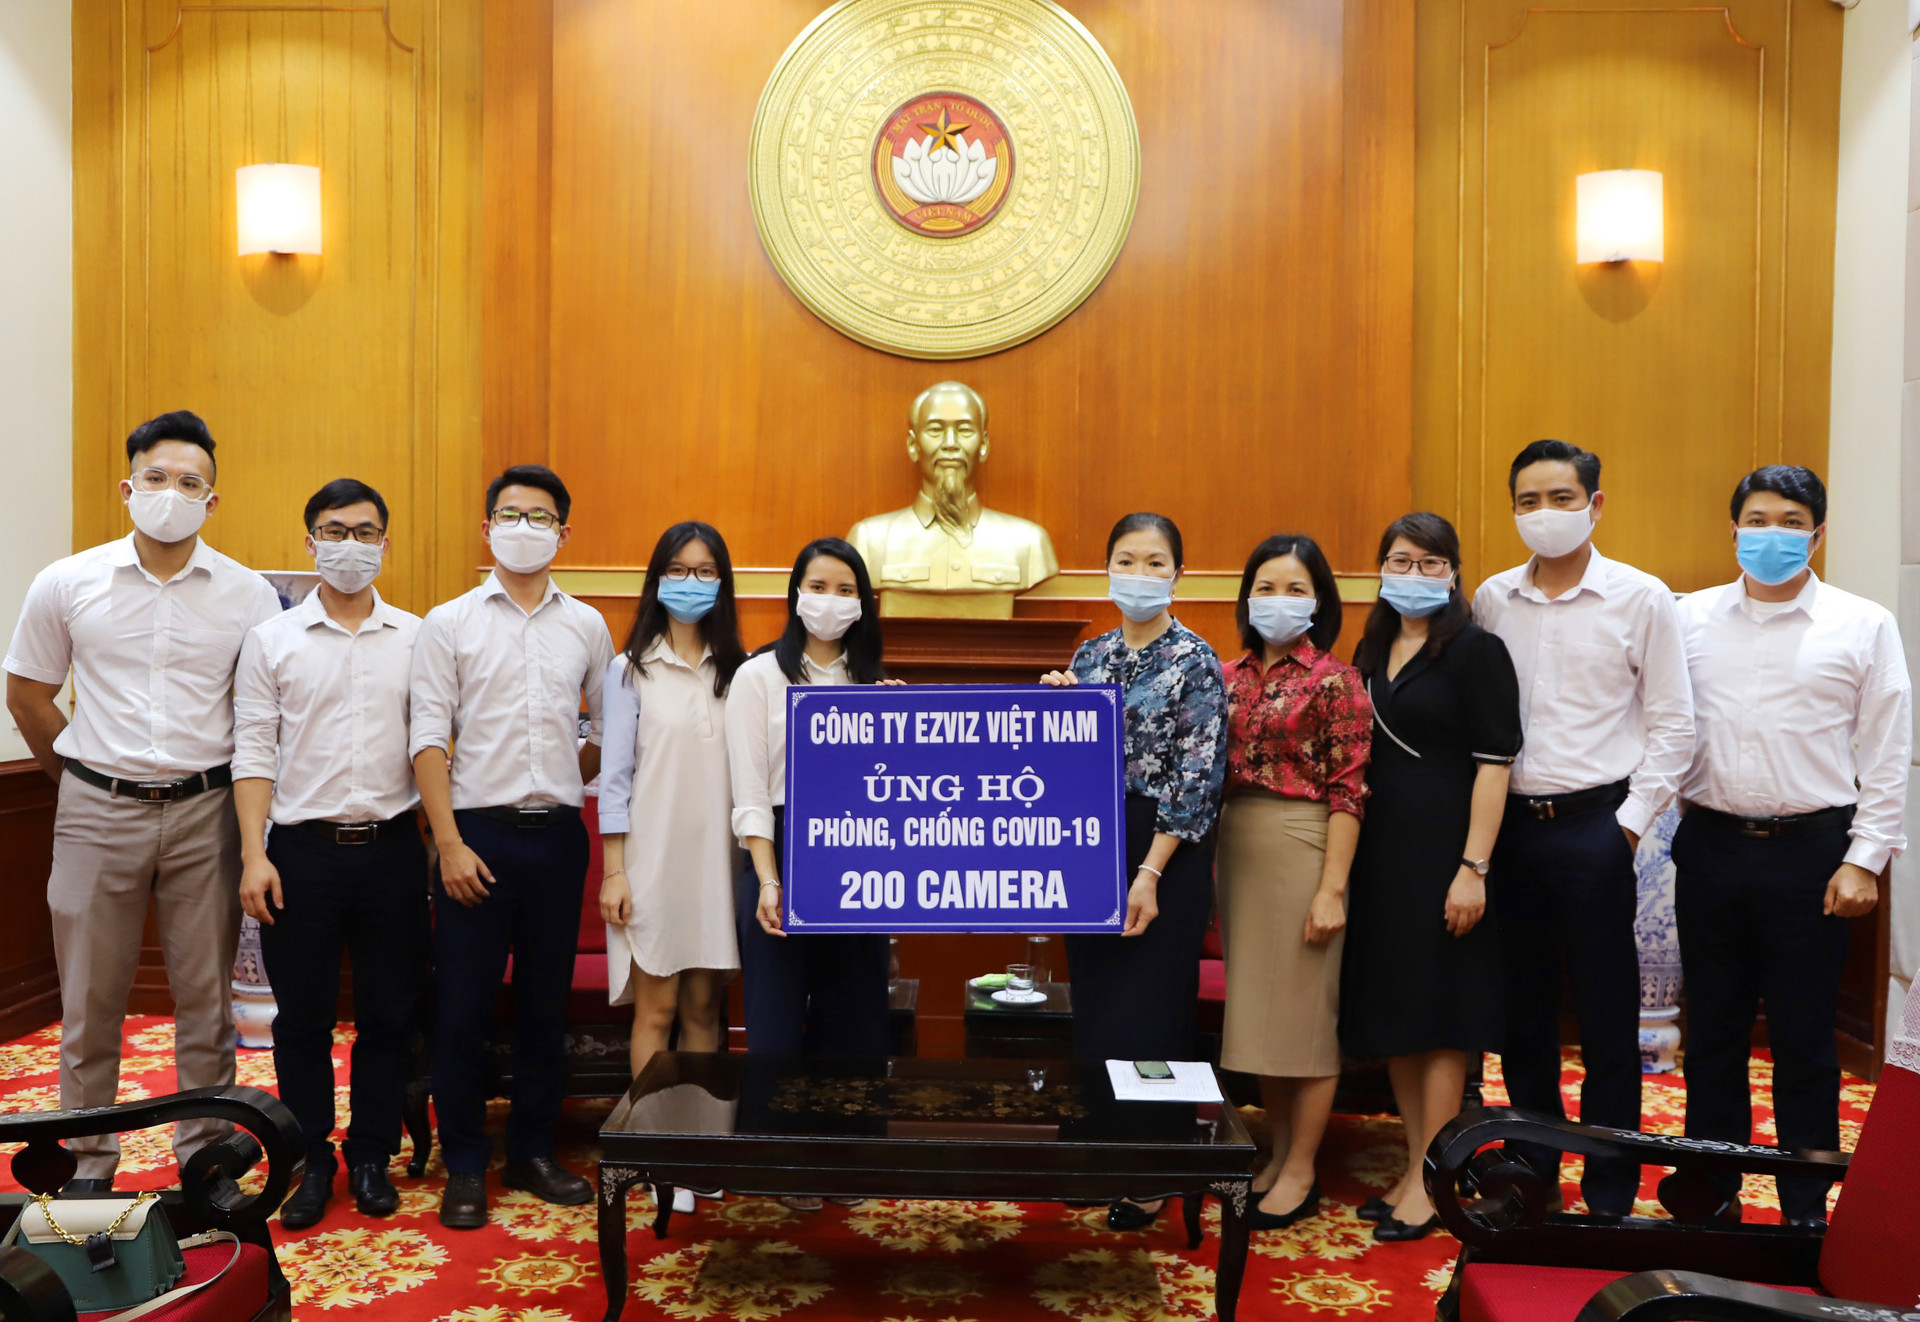 Ủy ban Trung ương MTTQ Việt Nam tiếp nhận ủng hộ từ Công ty EZVIZ Việt Nam.